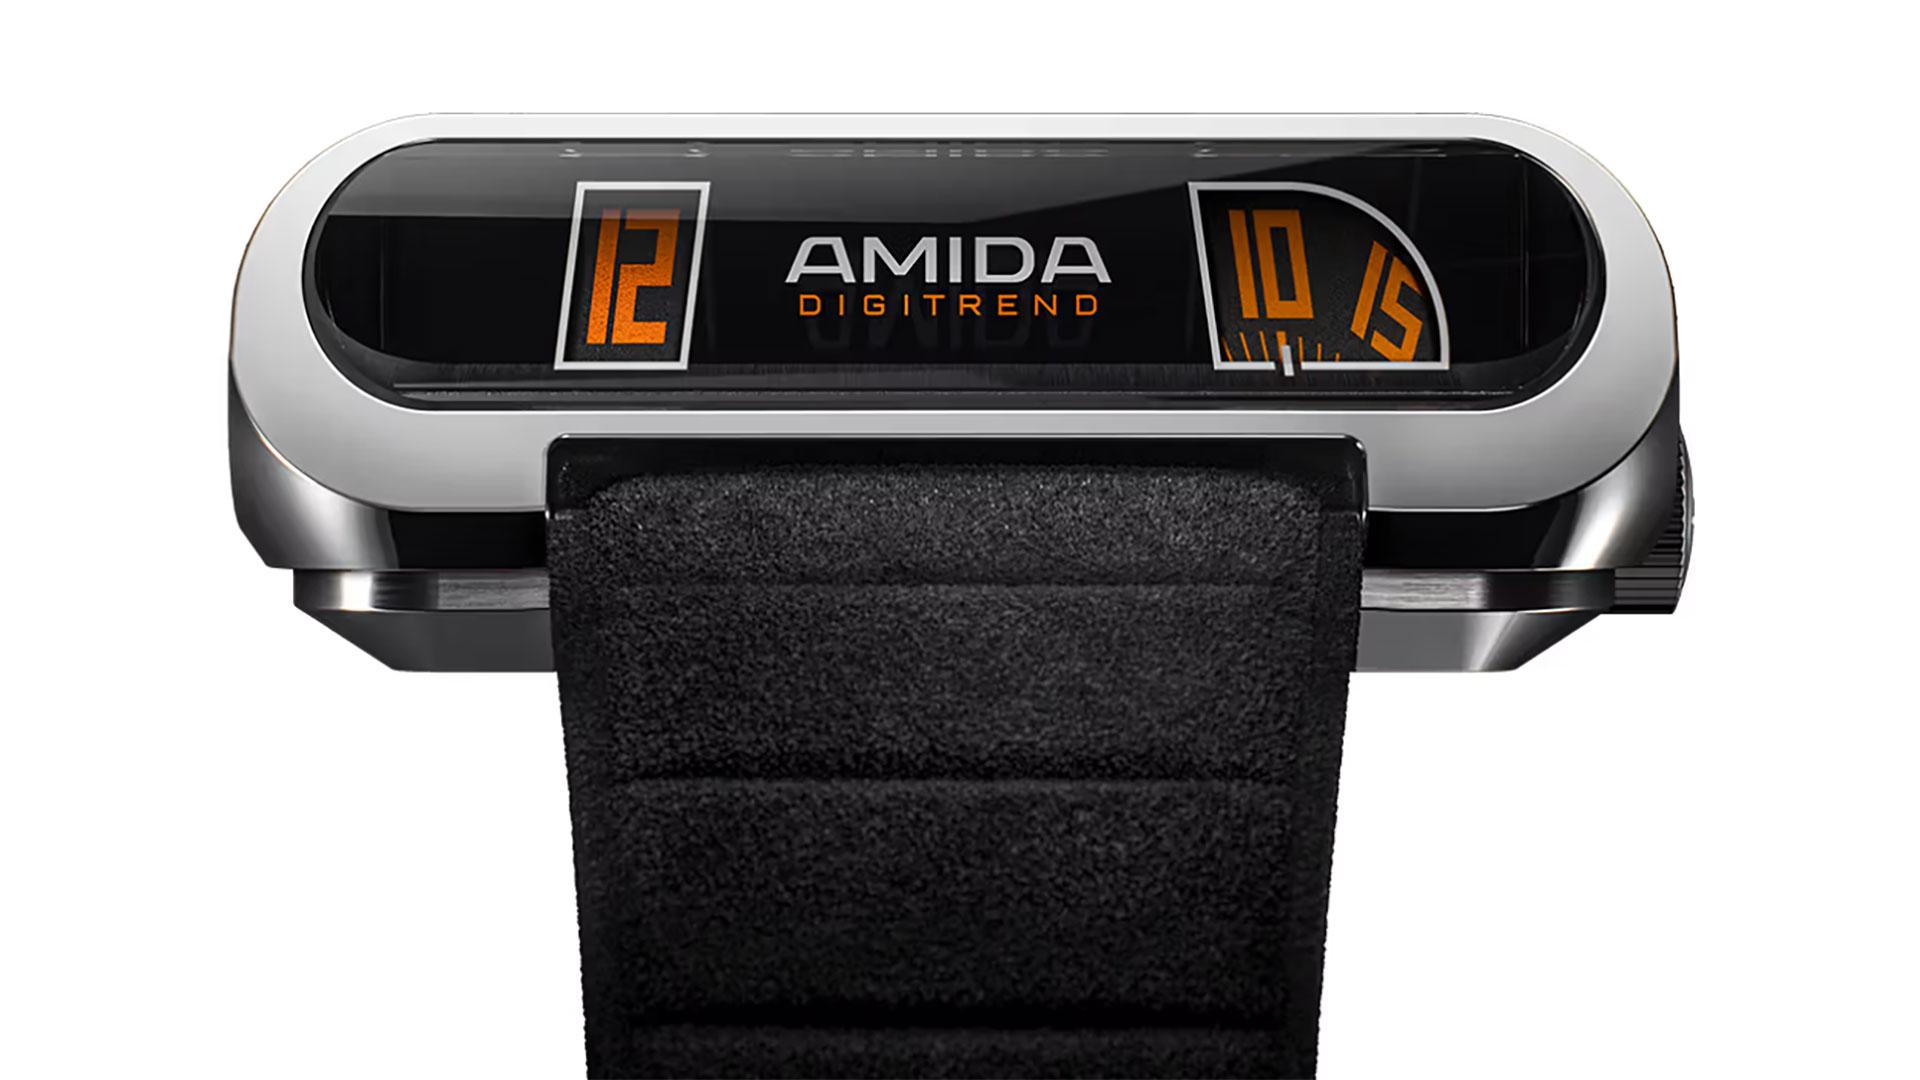 AMIDA maakt comeback met een retro-futuristisch Digitrend-uurwerk